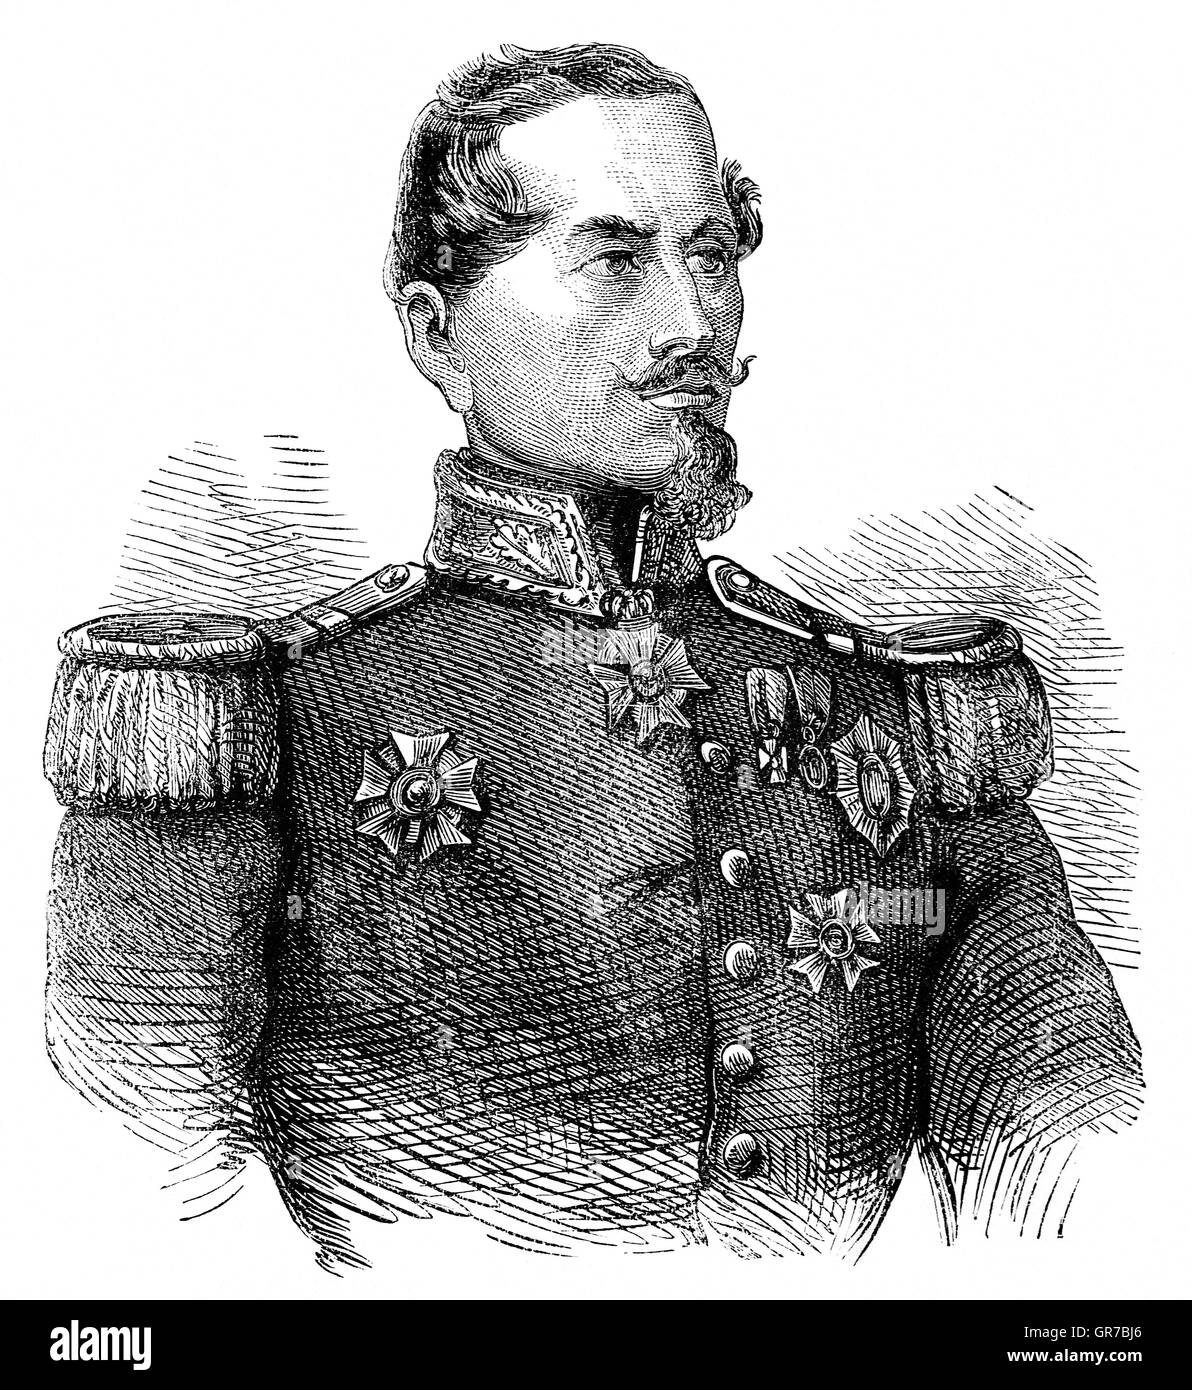 Armand-Jacques Leroy de Saint-Arnaud (1798 – 1854) war ein französischer Soldat und Marschall von Frankreich. Er diente als französischer Minister des Krieges bis des Krim-Krieges wurde er Oberbefehlshaber der Armee des Ostens. Er später dargelegt, Befehl, den die Franzosen im Krimkrieg, neben seinem britischen Kollegen Lord Raglan zwingt. Stockfoto